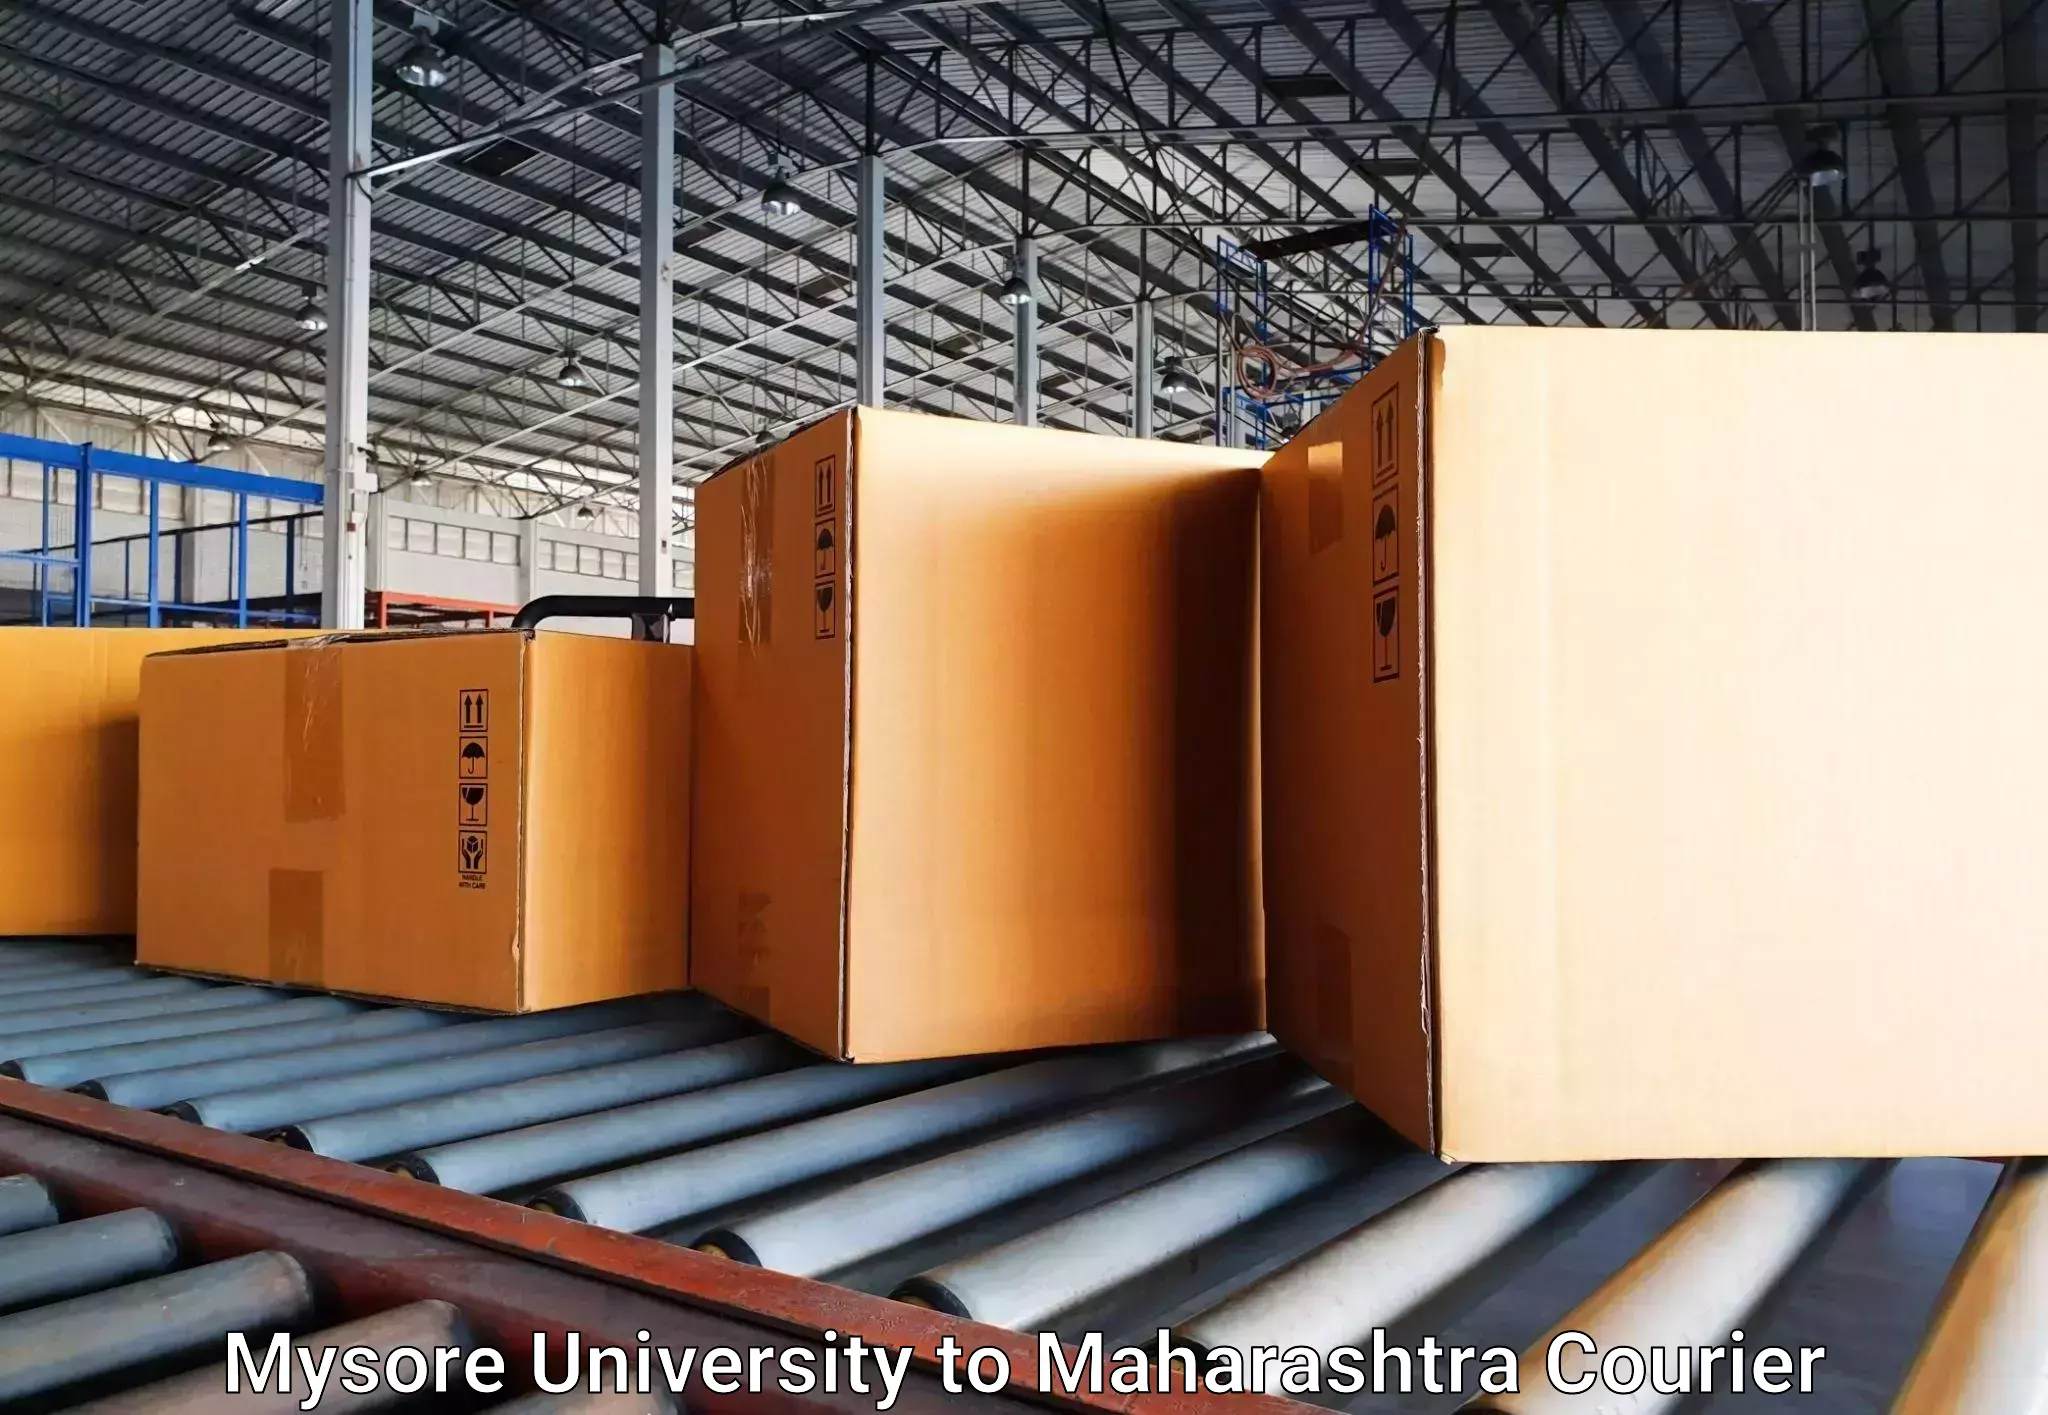 Multi-destination luggage transport Mysore University to Maharashtra